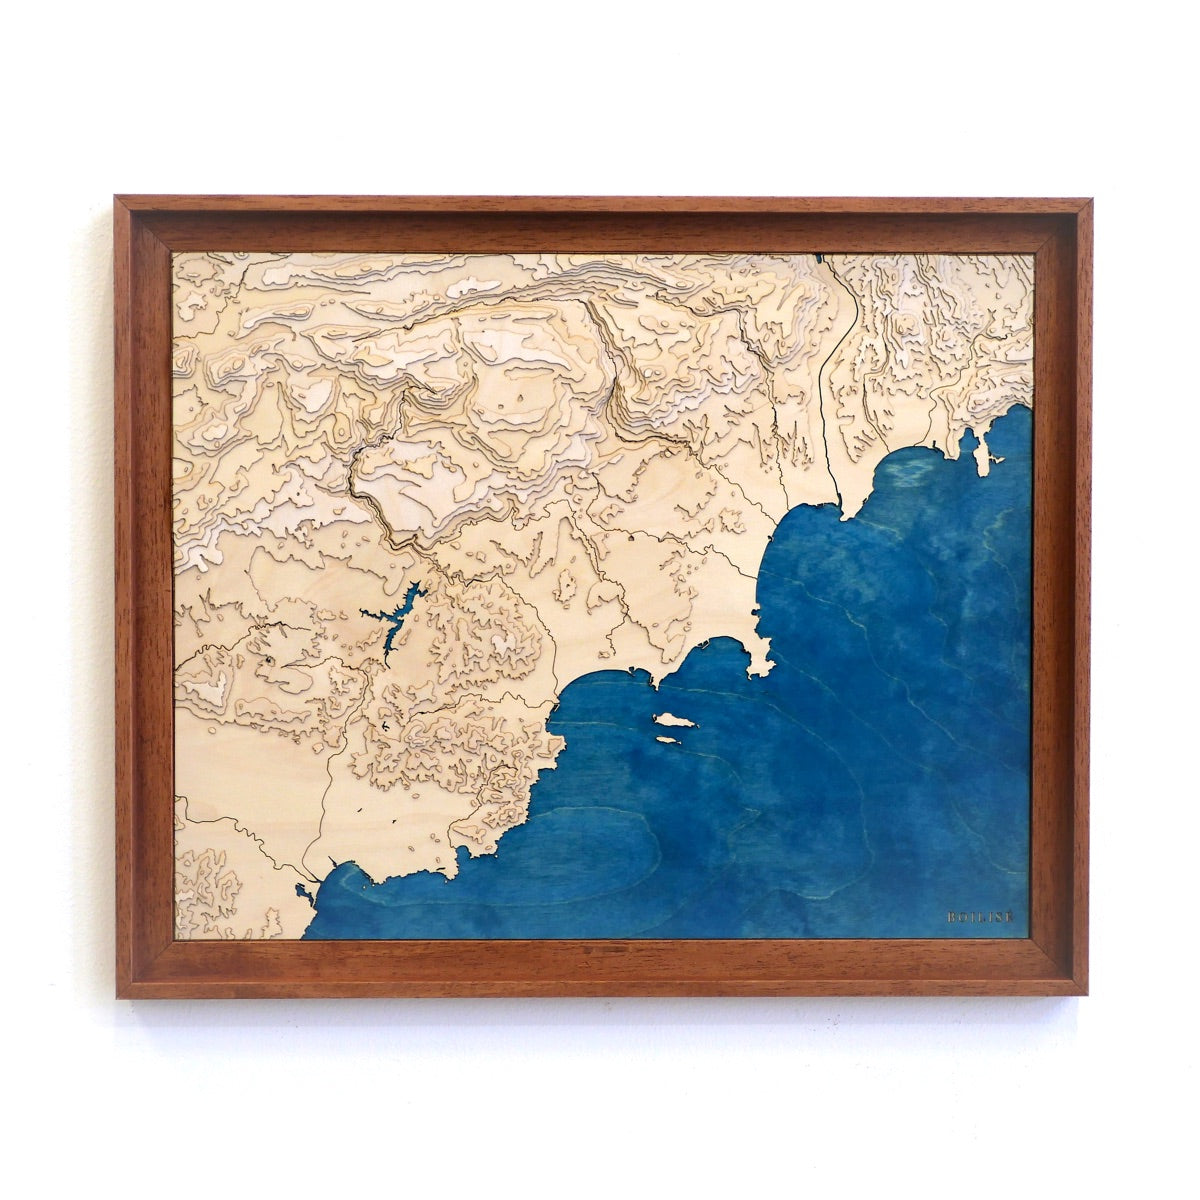 Carte topographique en bois de la côte d'Azur encadrée dans une caisse américaine brune avec la mer en bleu marine